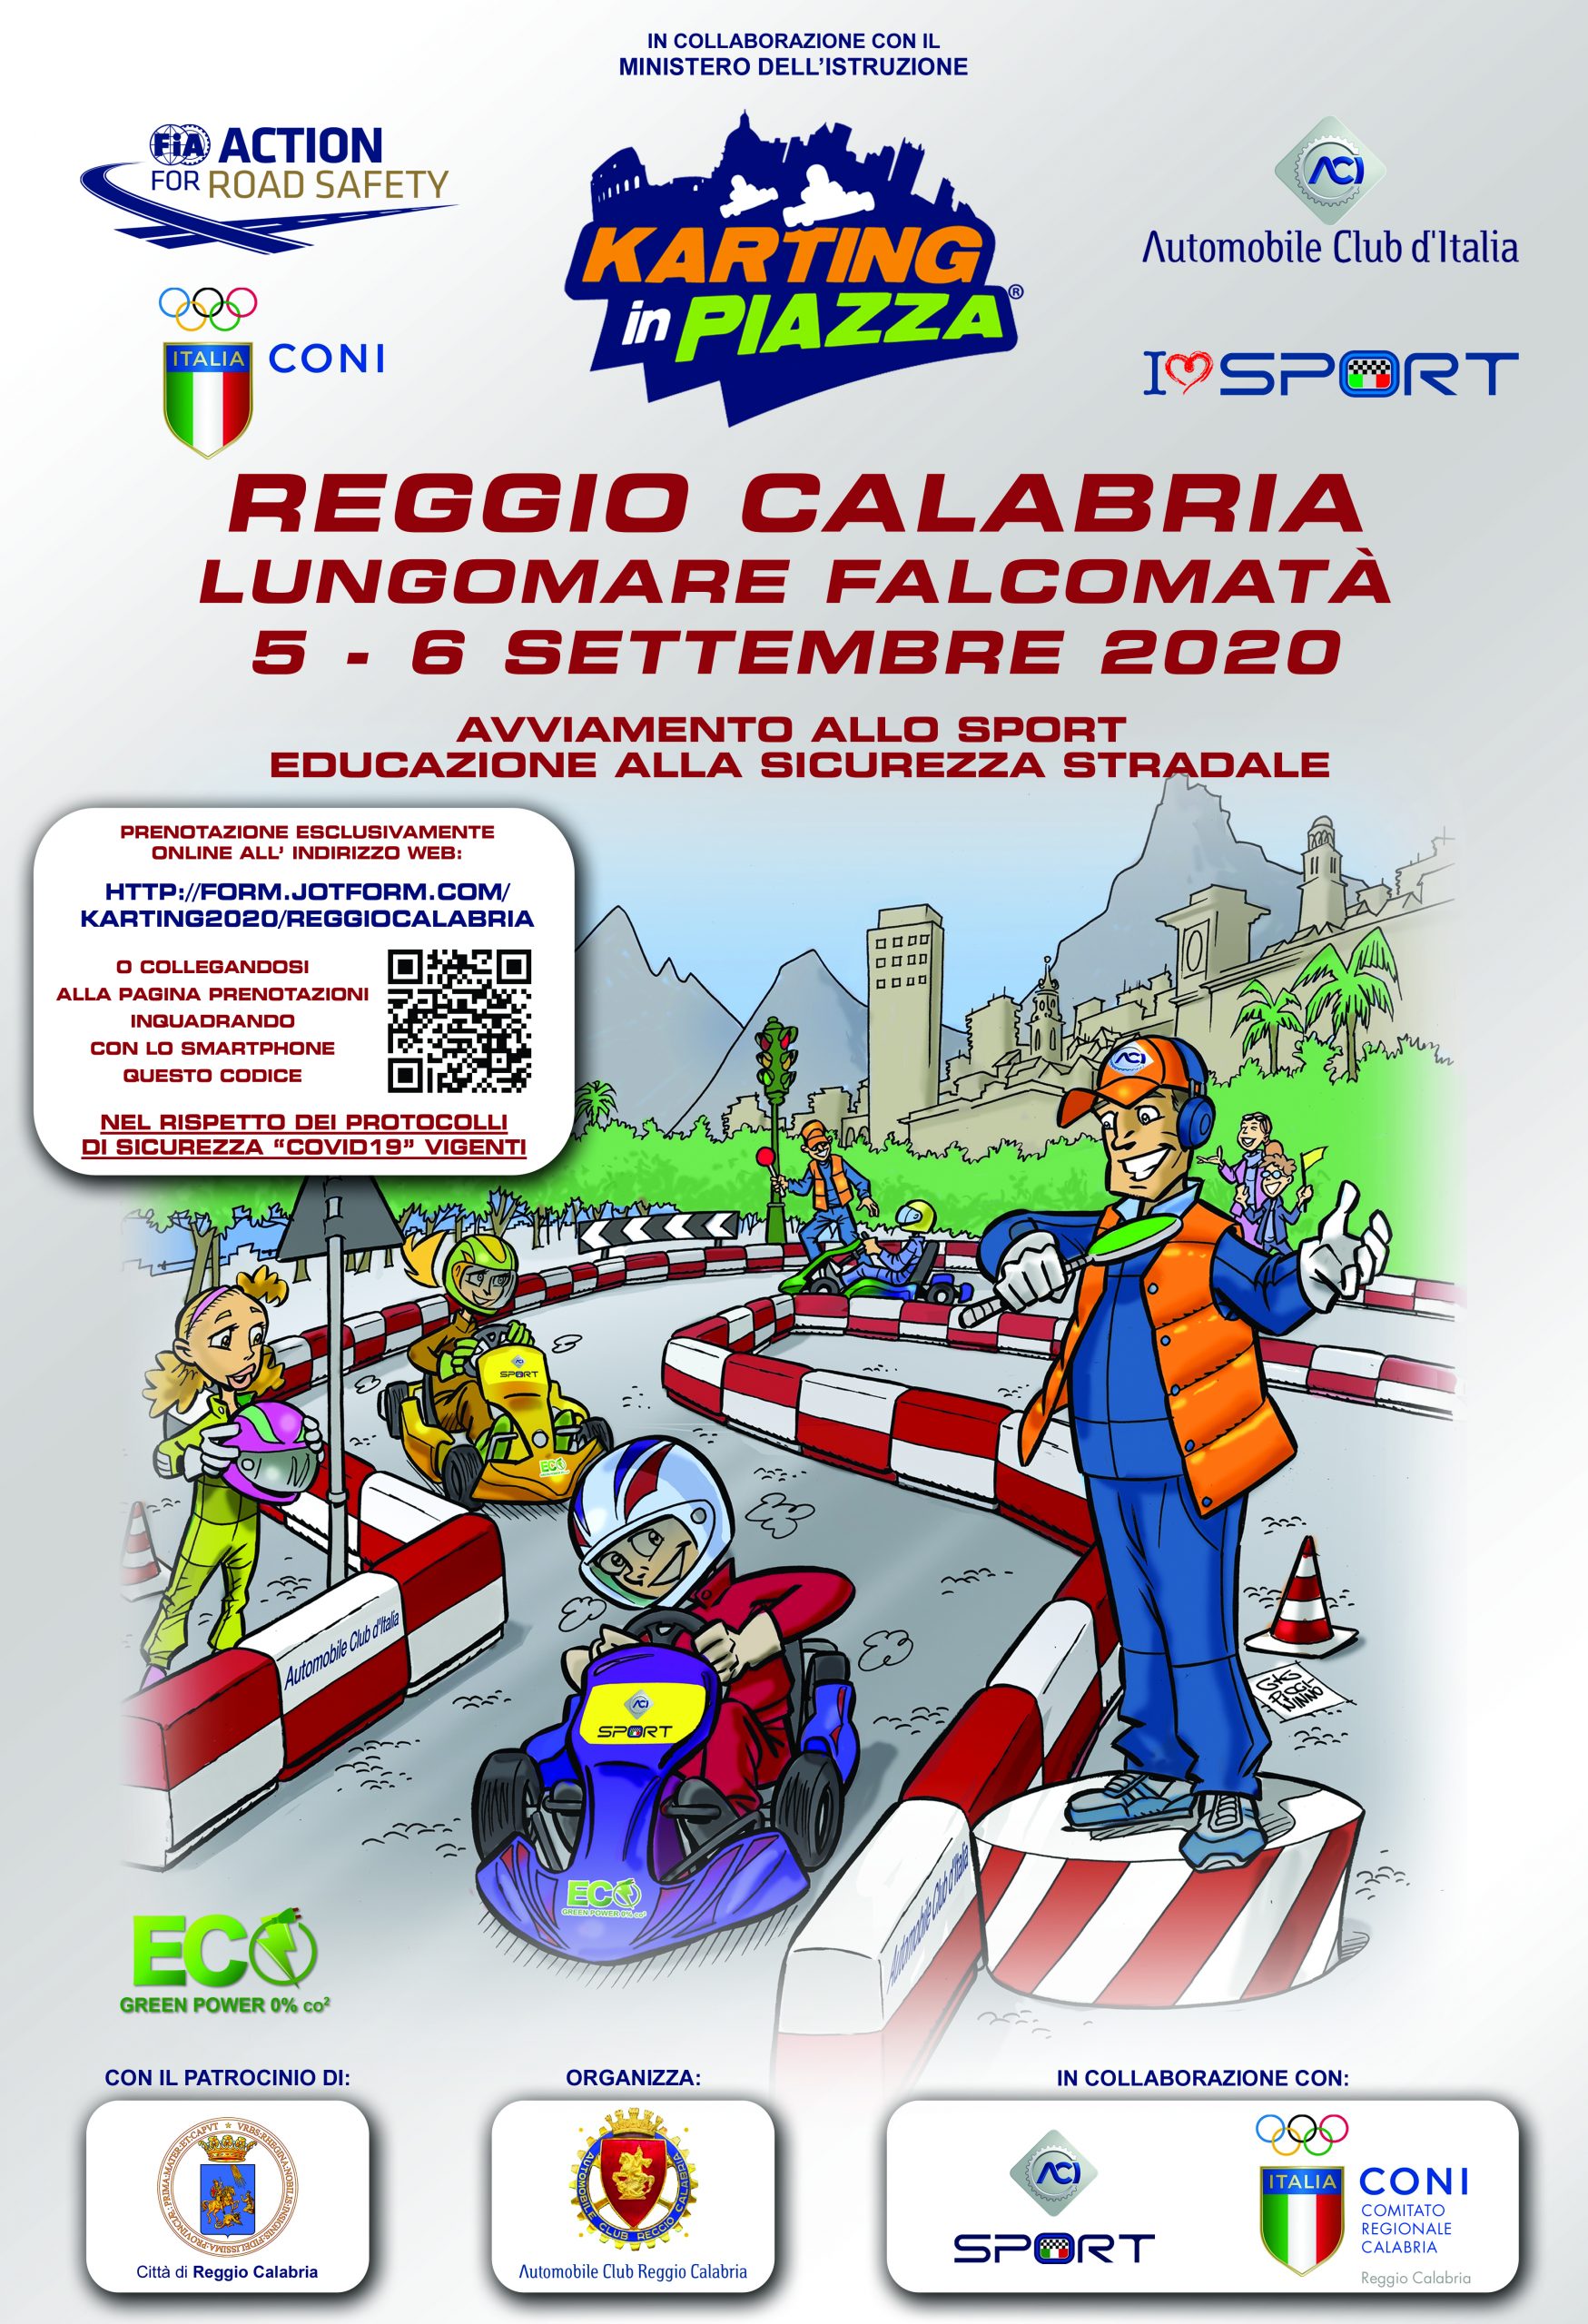 Reggio Calabria, l’Automobile Club d’Italia organizza “Karting in Piazza”